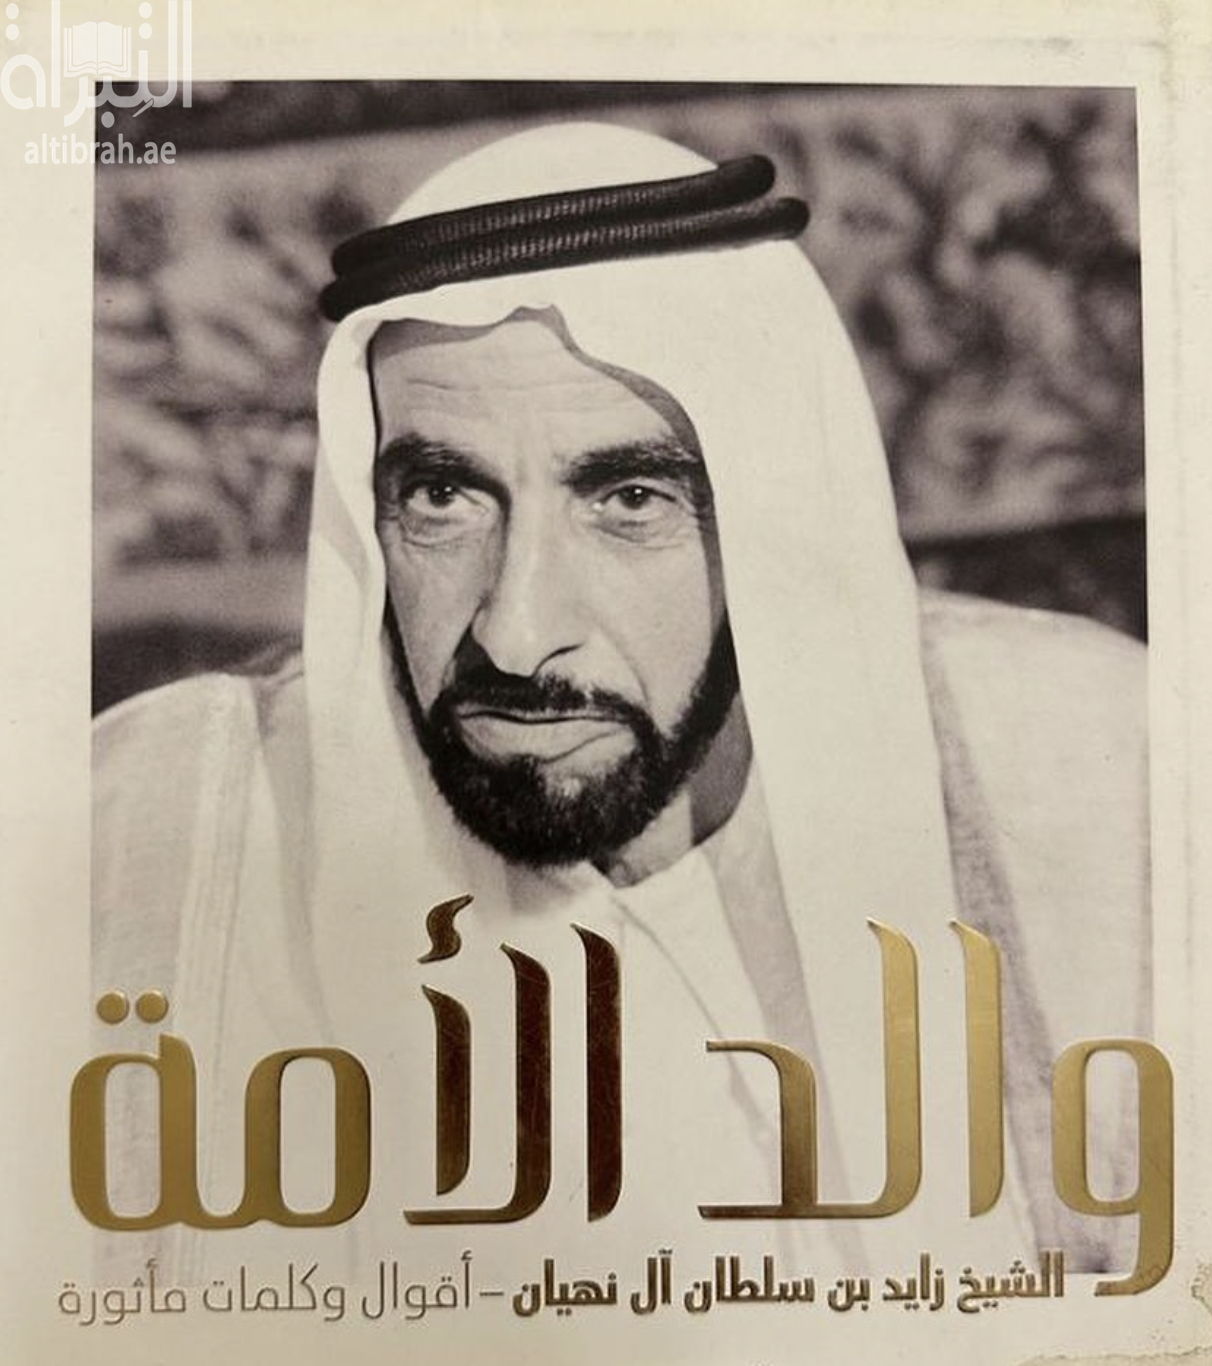 والد الأمة الشيخ زايد بن سلطان آل نهيان : أقوال وكلمات مأثورة Father of our Nation : Collected Quotes of Sheikh Zayed bin Sultan Al Nahyan